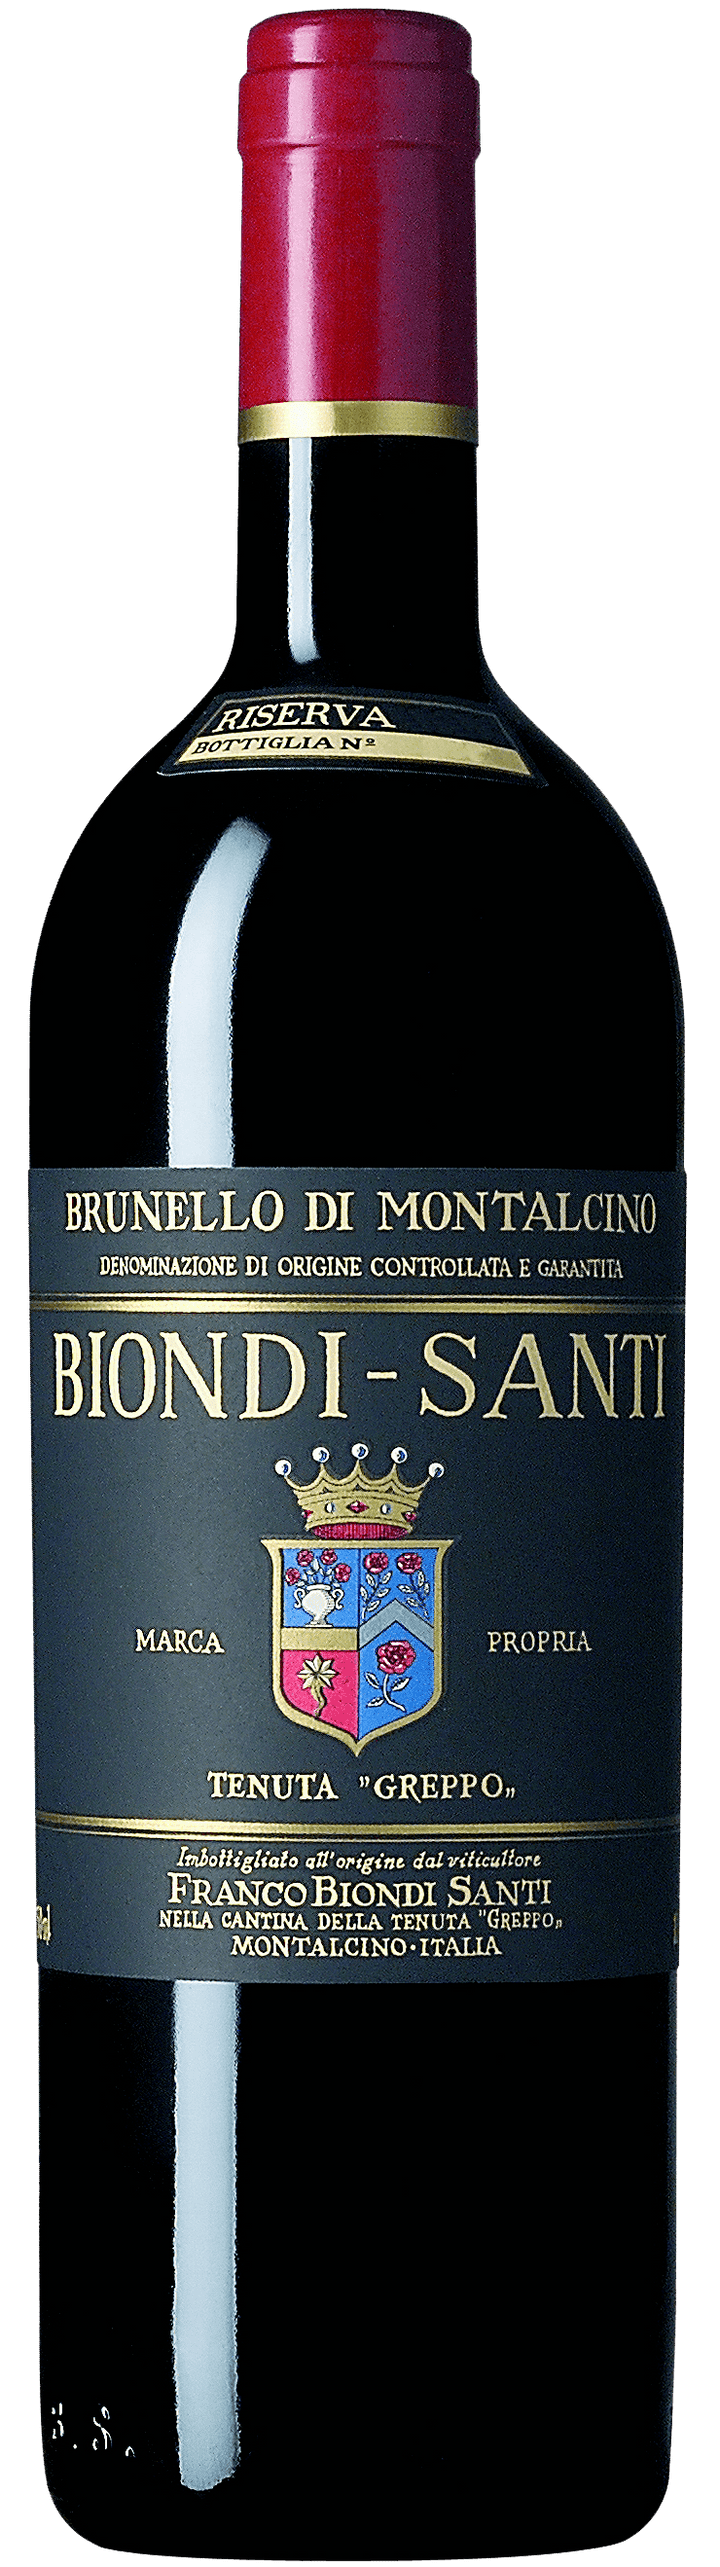 1985 Biondi-Santi Brunello di Montalcino Riserva DOCG